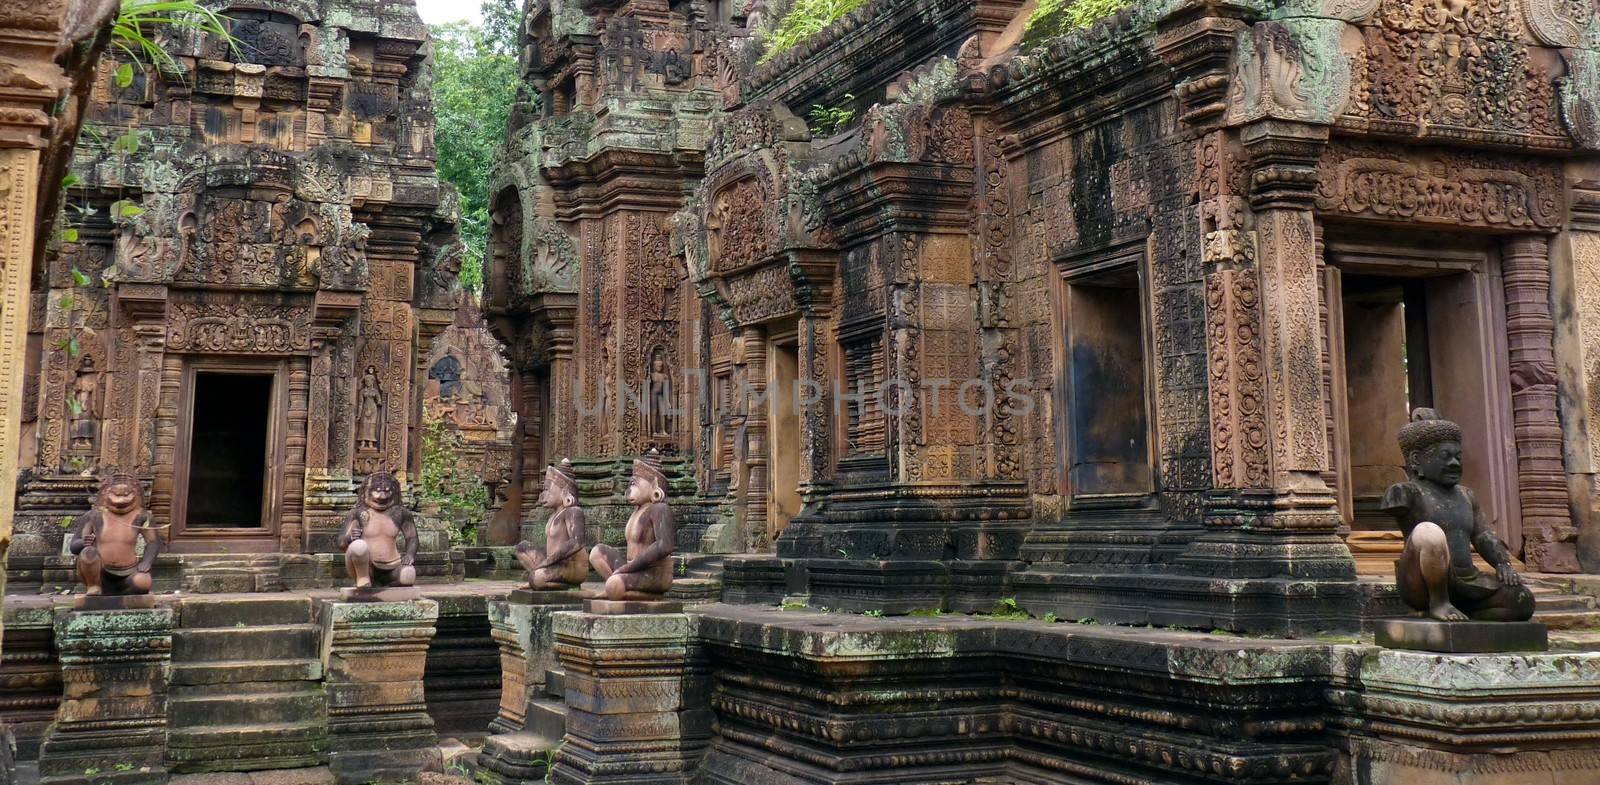 Banteay Srei ruins temple in Siem Reap by nicousnake